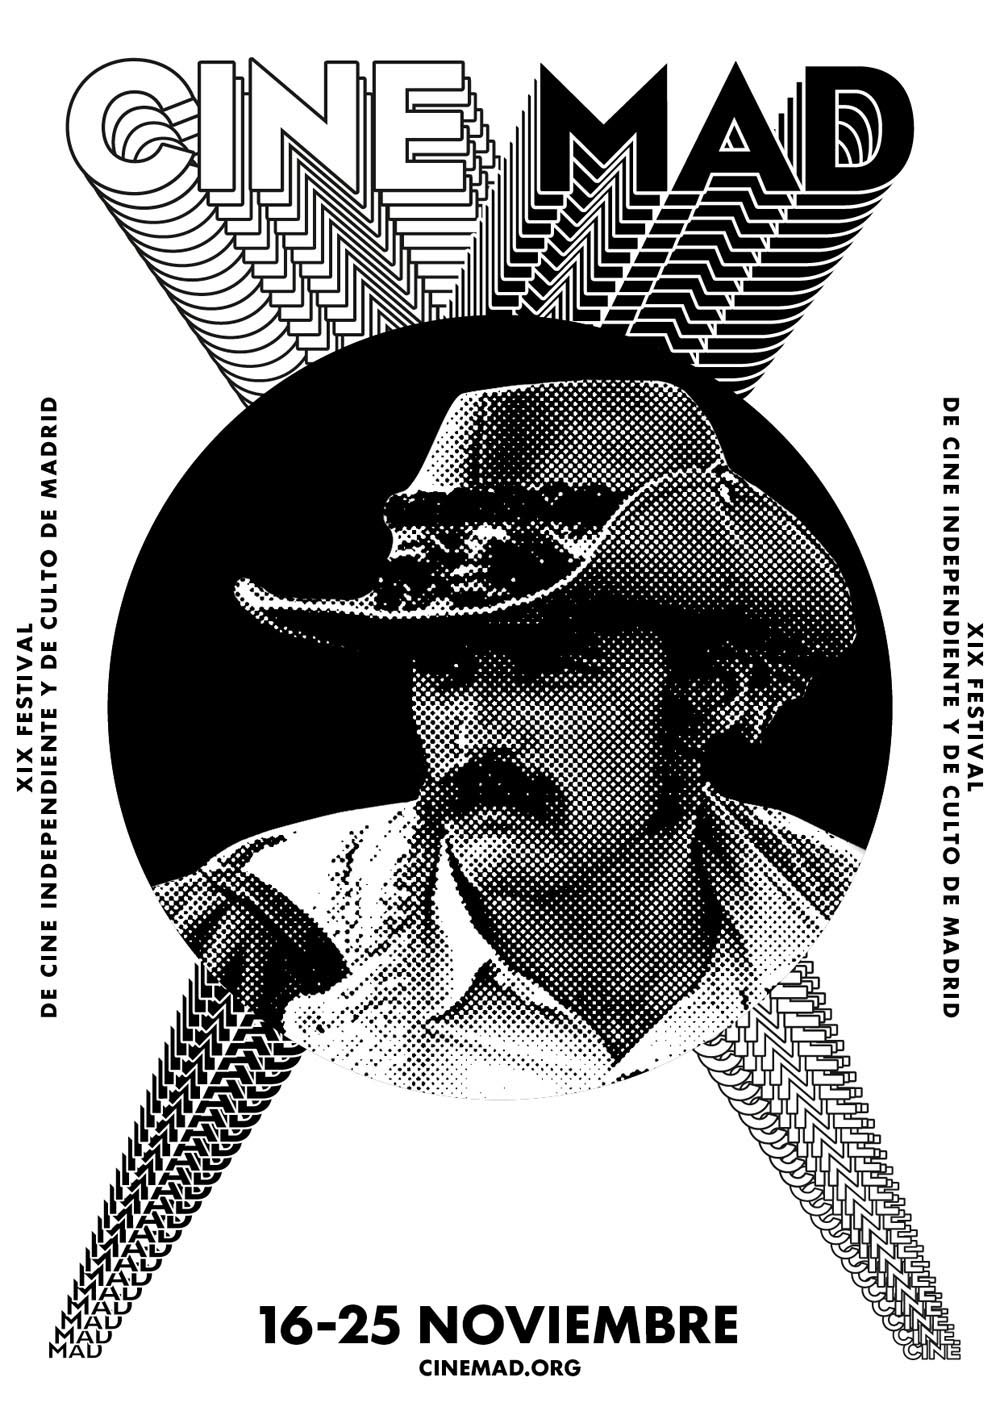 2012年马德里Cinemad电影节海报设计